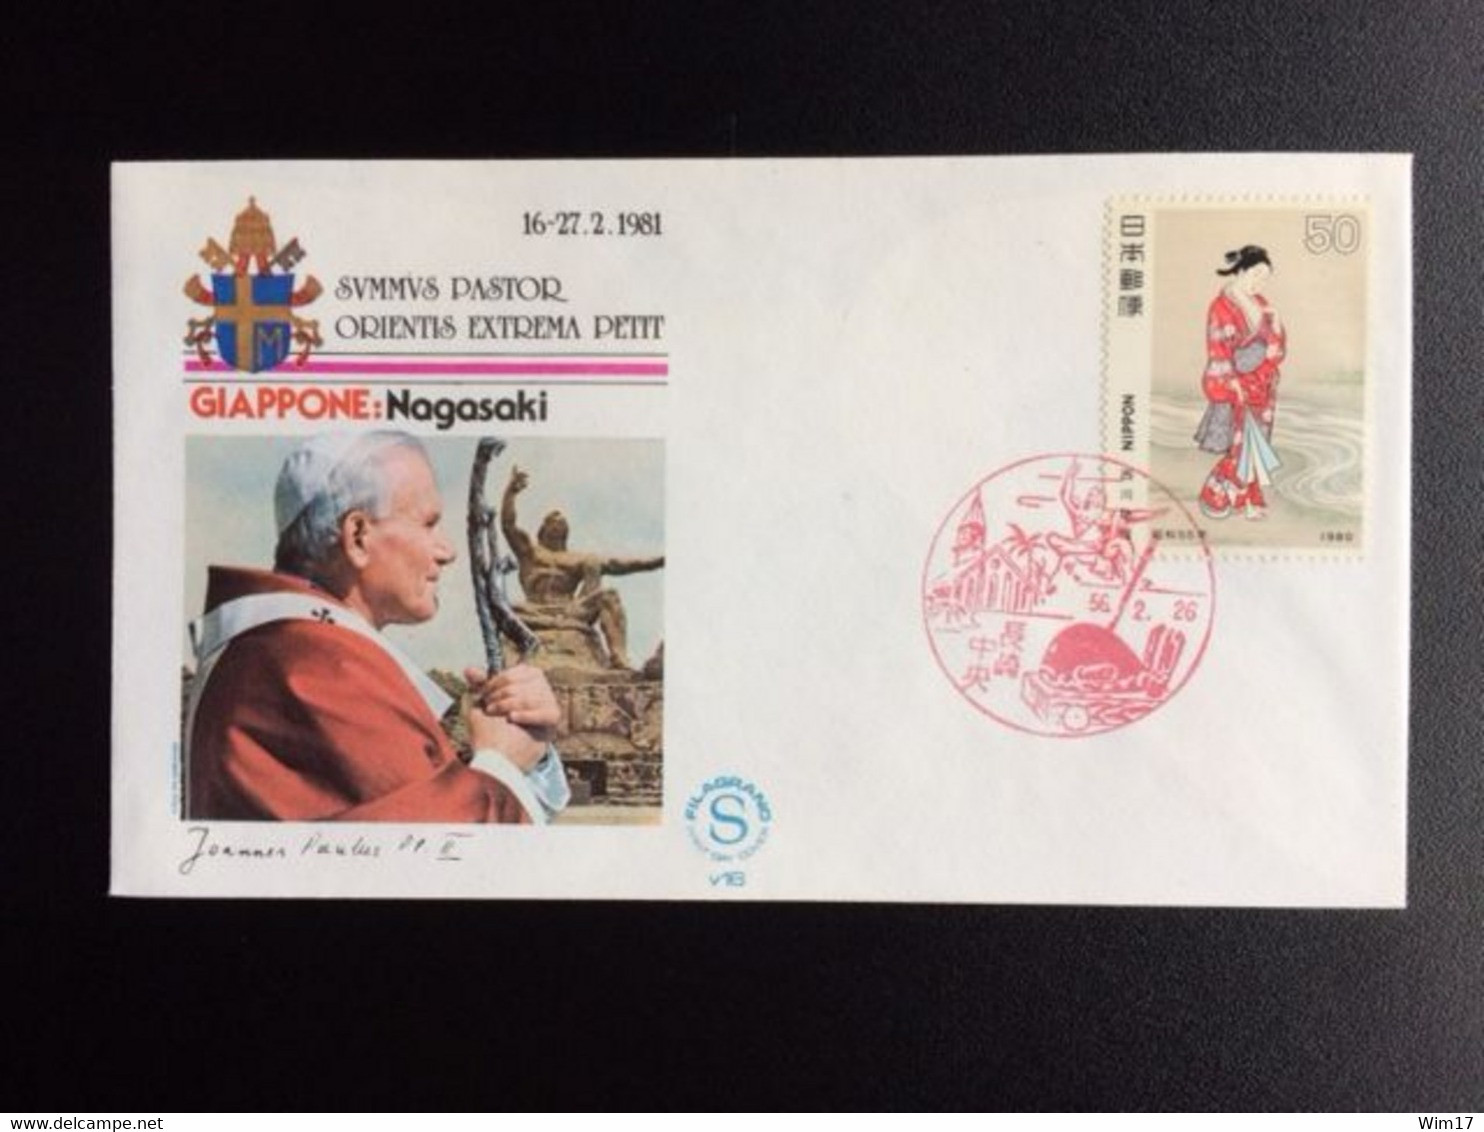 JAPAN 1981 POPE VISIT TO JAPAN 16-27 FEBR. 1981 - Enveloppes